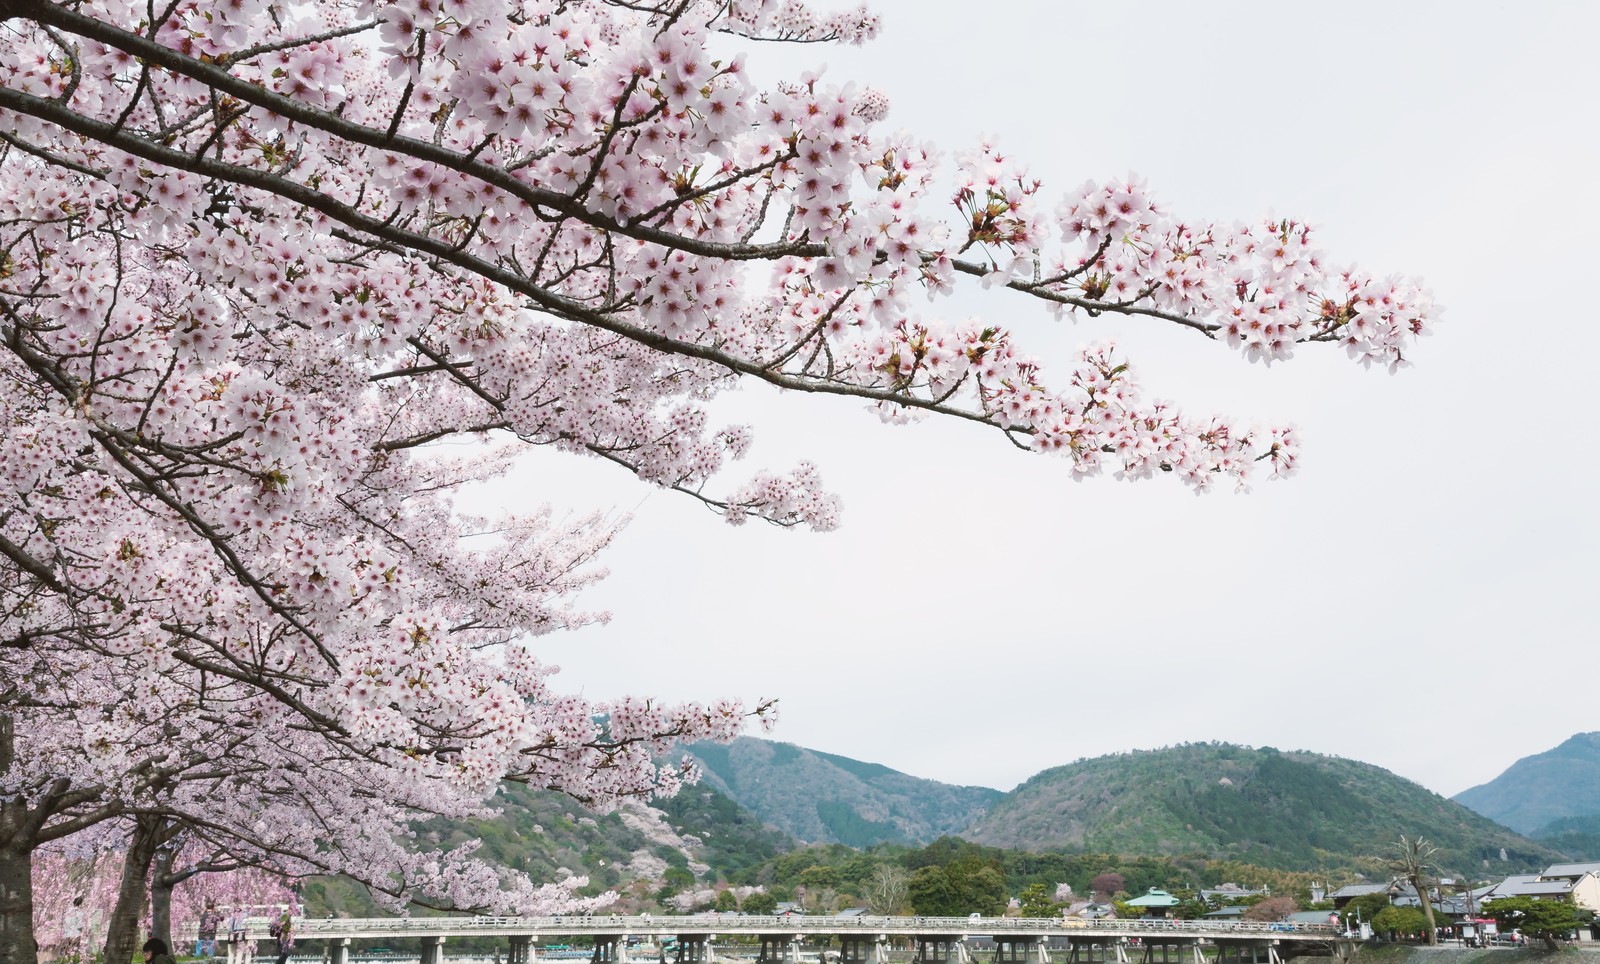 京都 嵐山の桜の見頃や名所と食べ歩き 駐車場とアクセス情報も ヒデくんのなんでもブログ